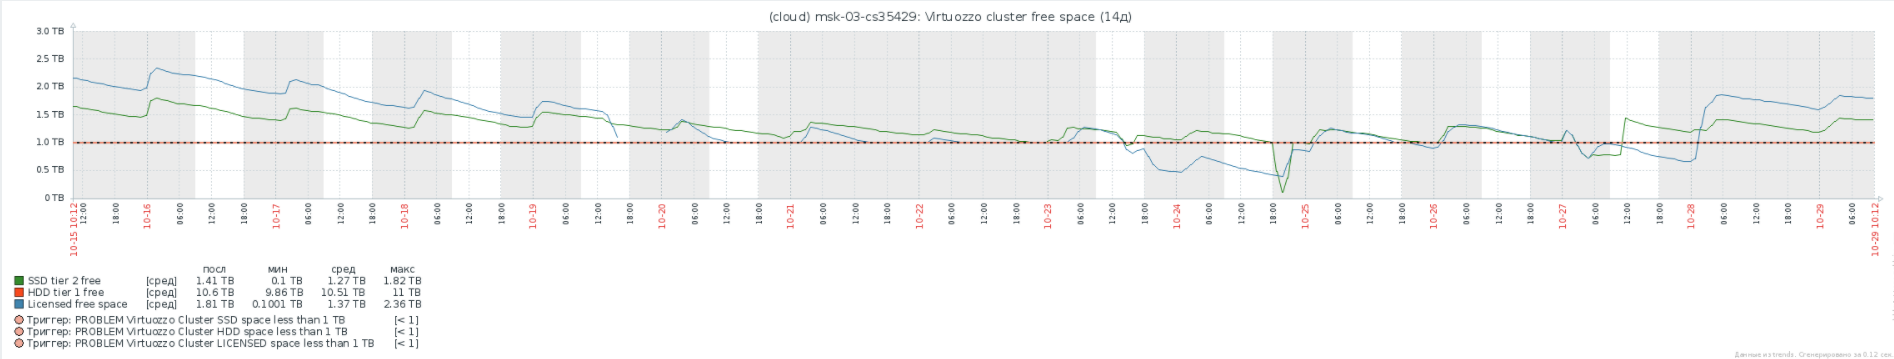 Virtuozzo Storage: Реальный опыт эксплуатации, советы по оптимизации и решению проблем - 3